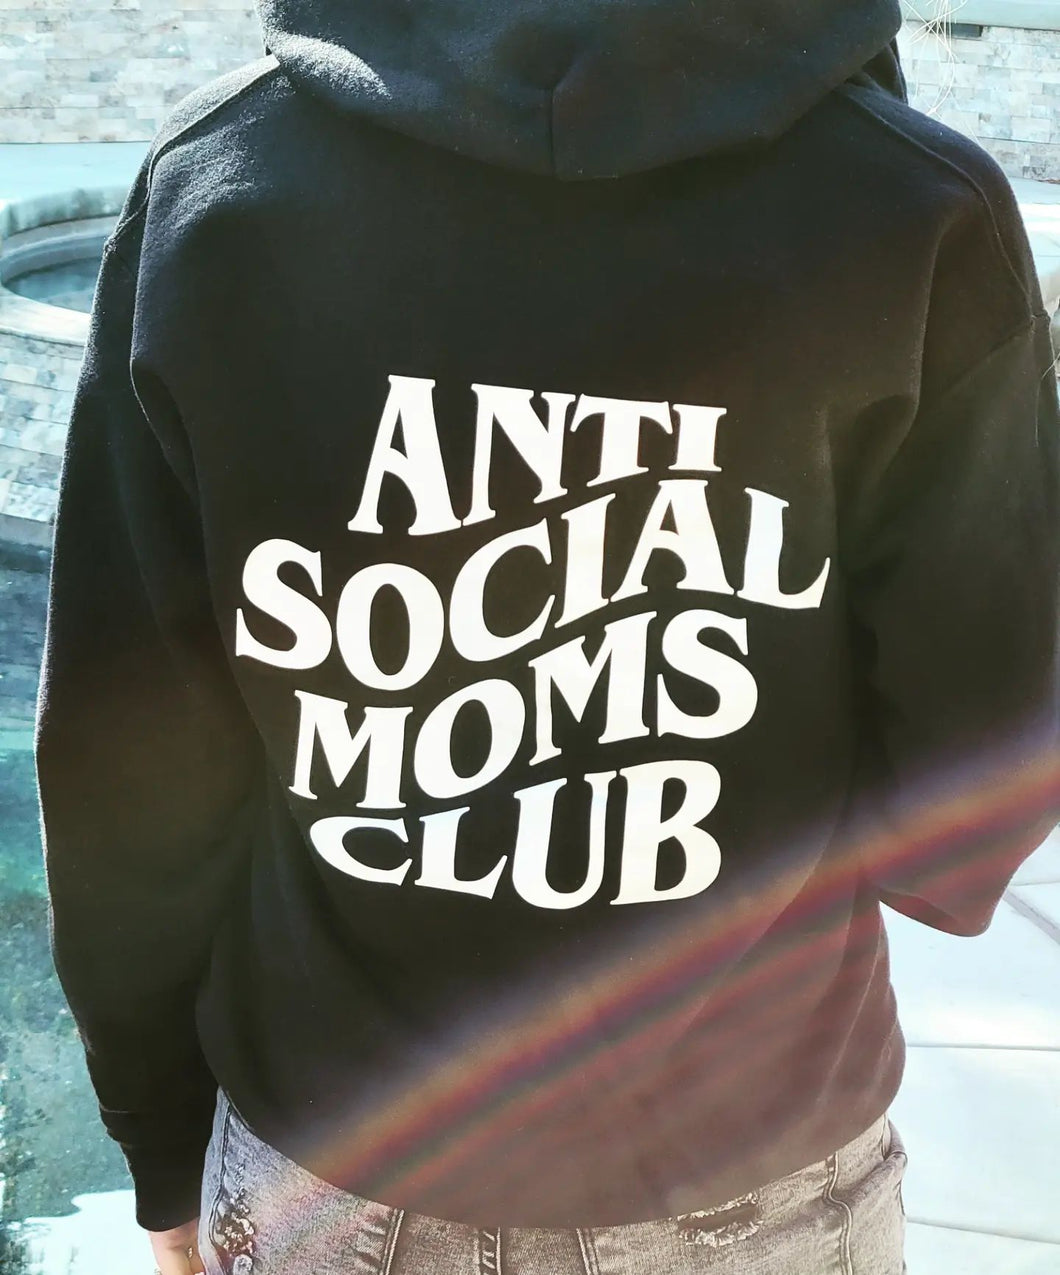 Anti Social Moms Club Hoodie - Black Zip Up Sweatshirt with Hood